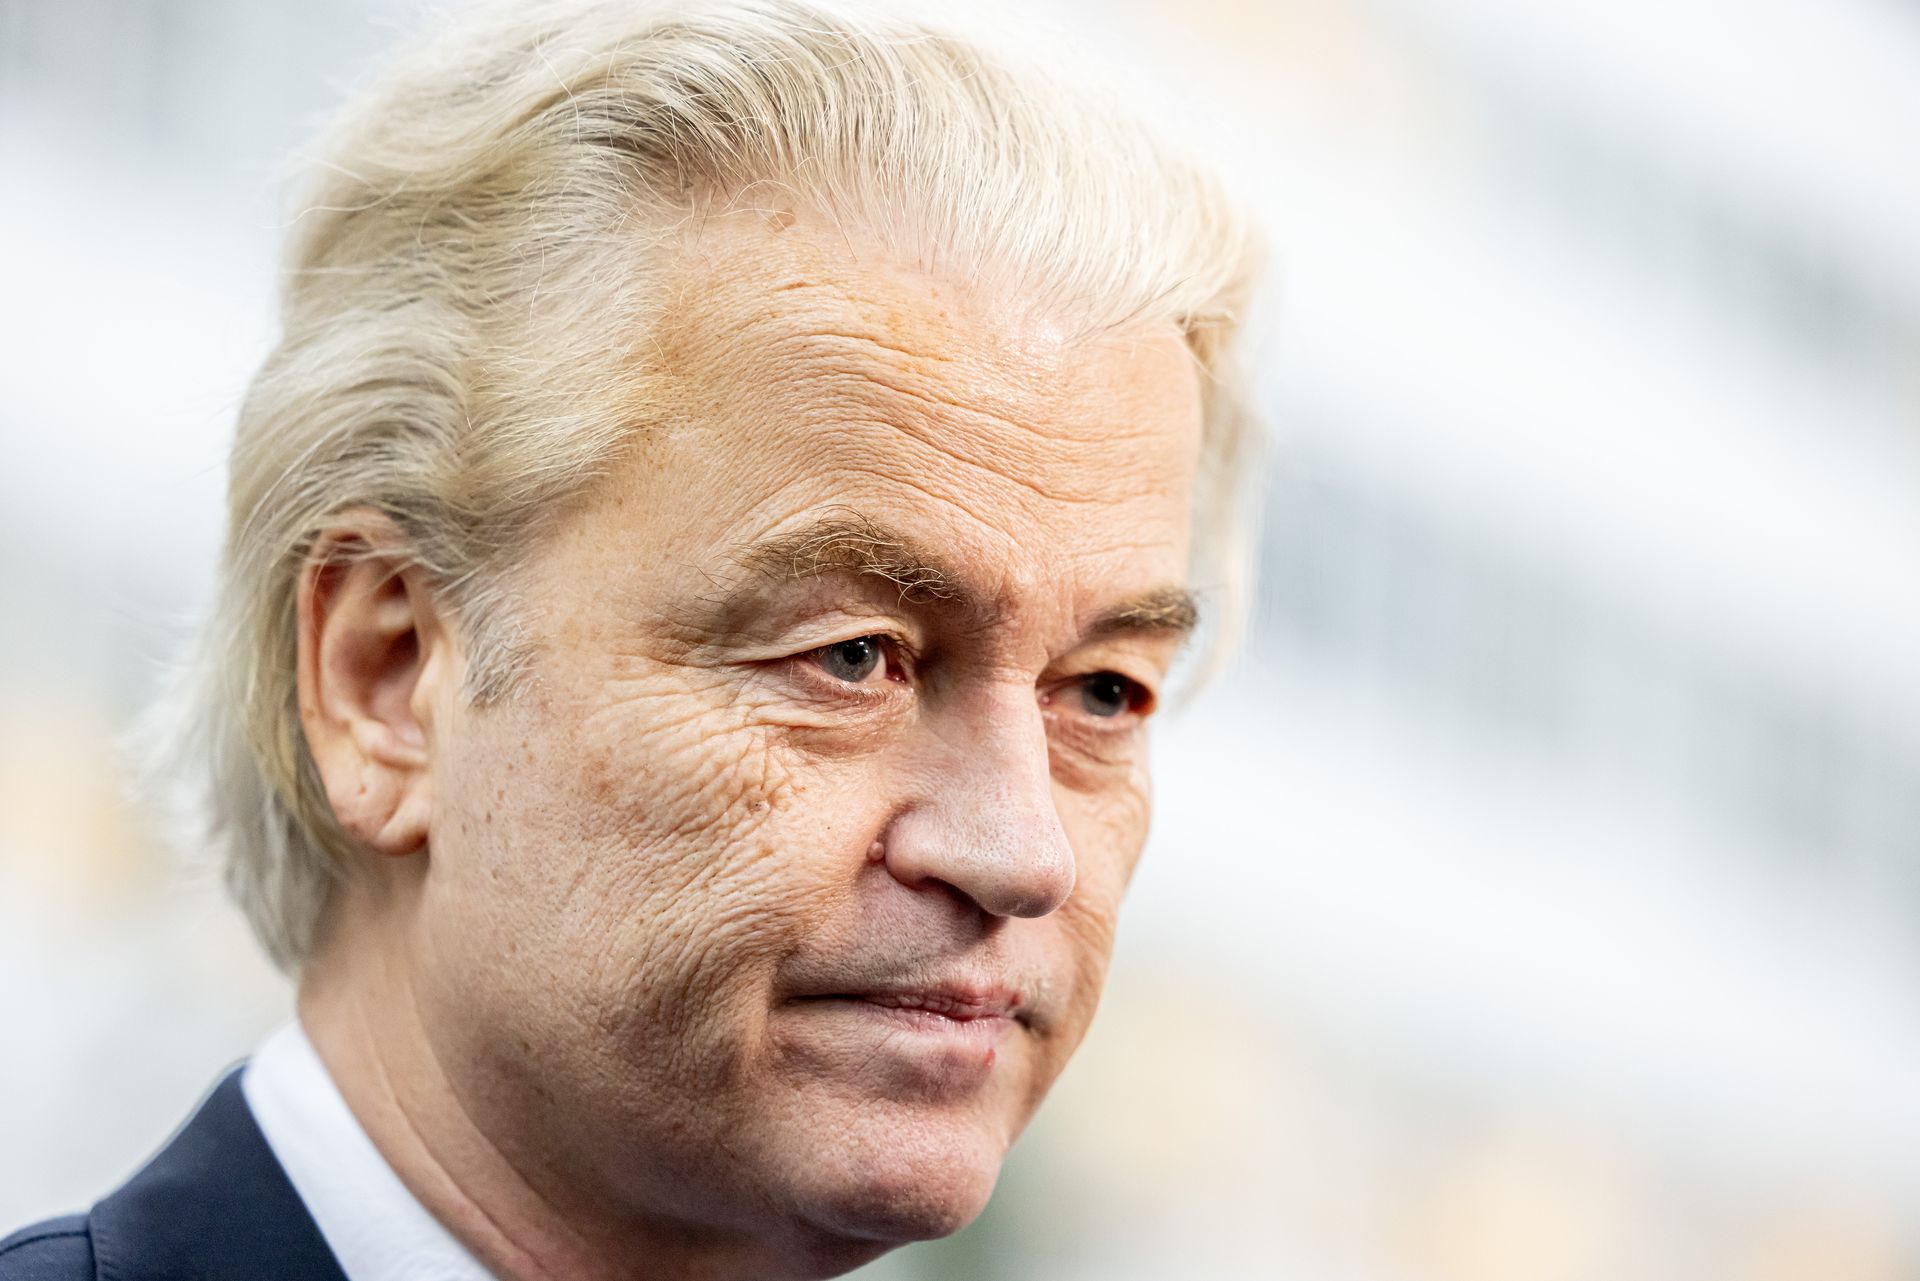 Wilders' ideeën zijn soms heel extreem